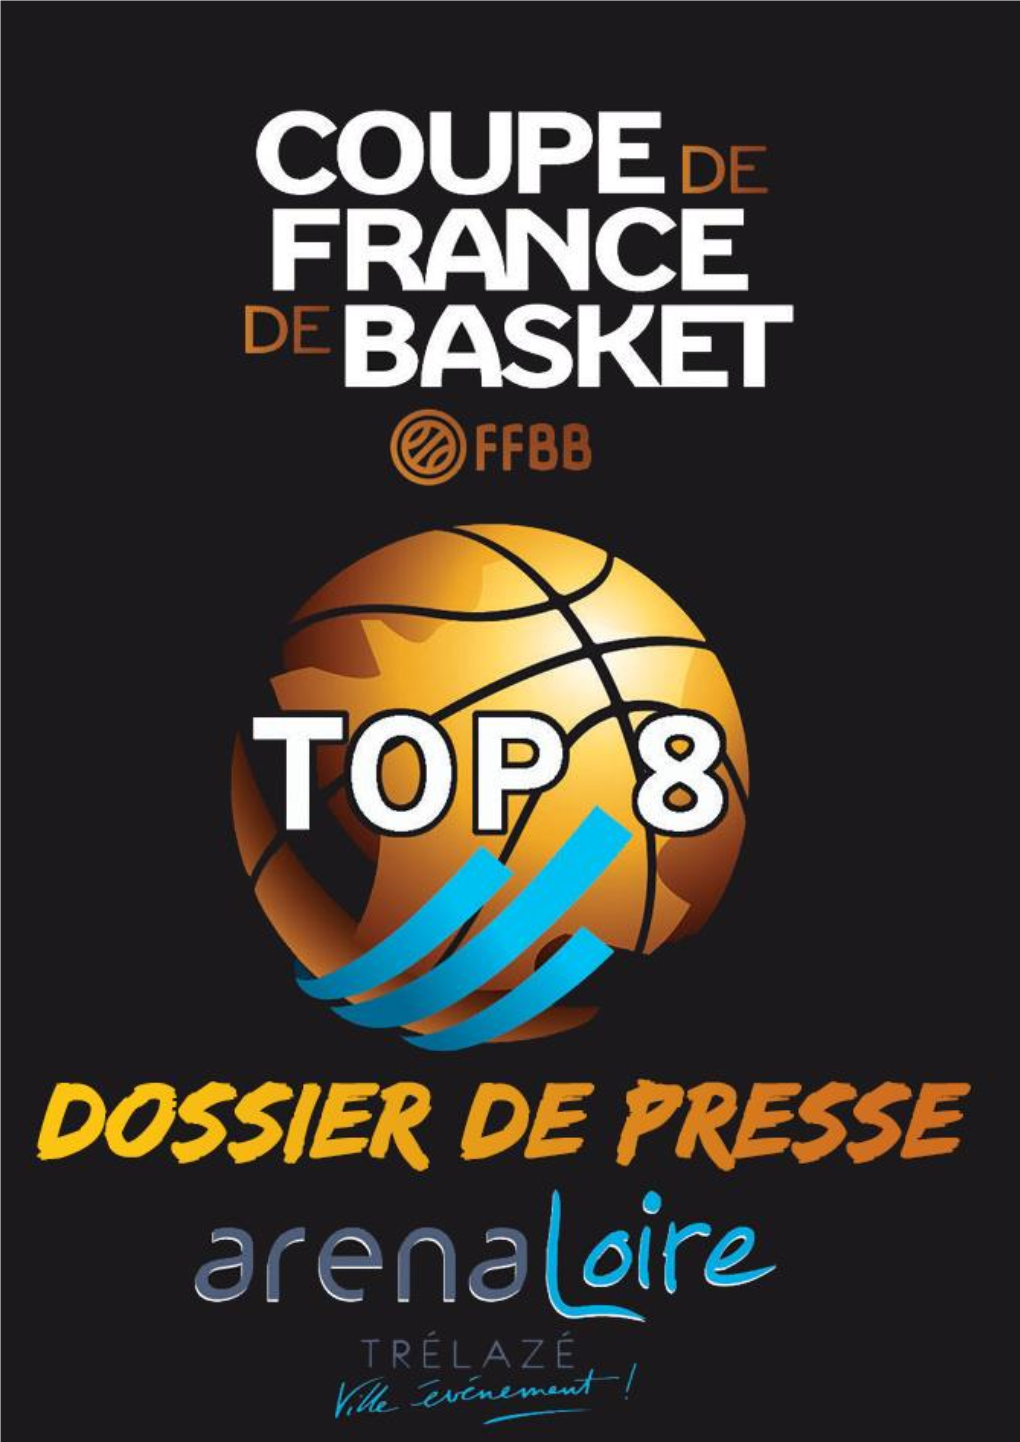 Top 8 Coupe De France Arena Loire